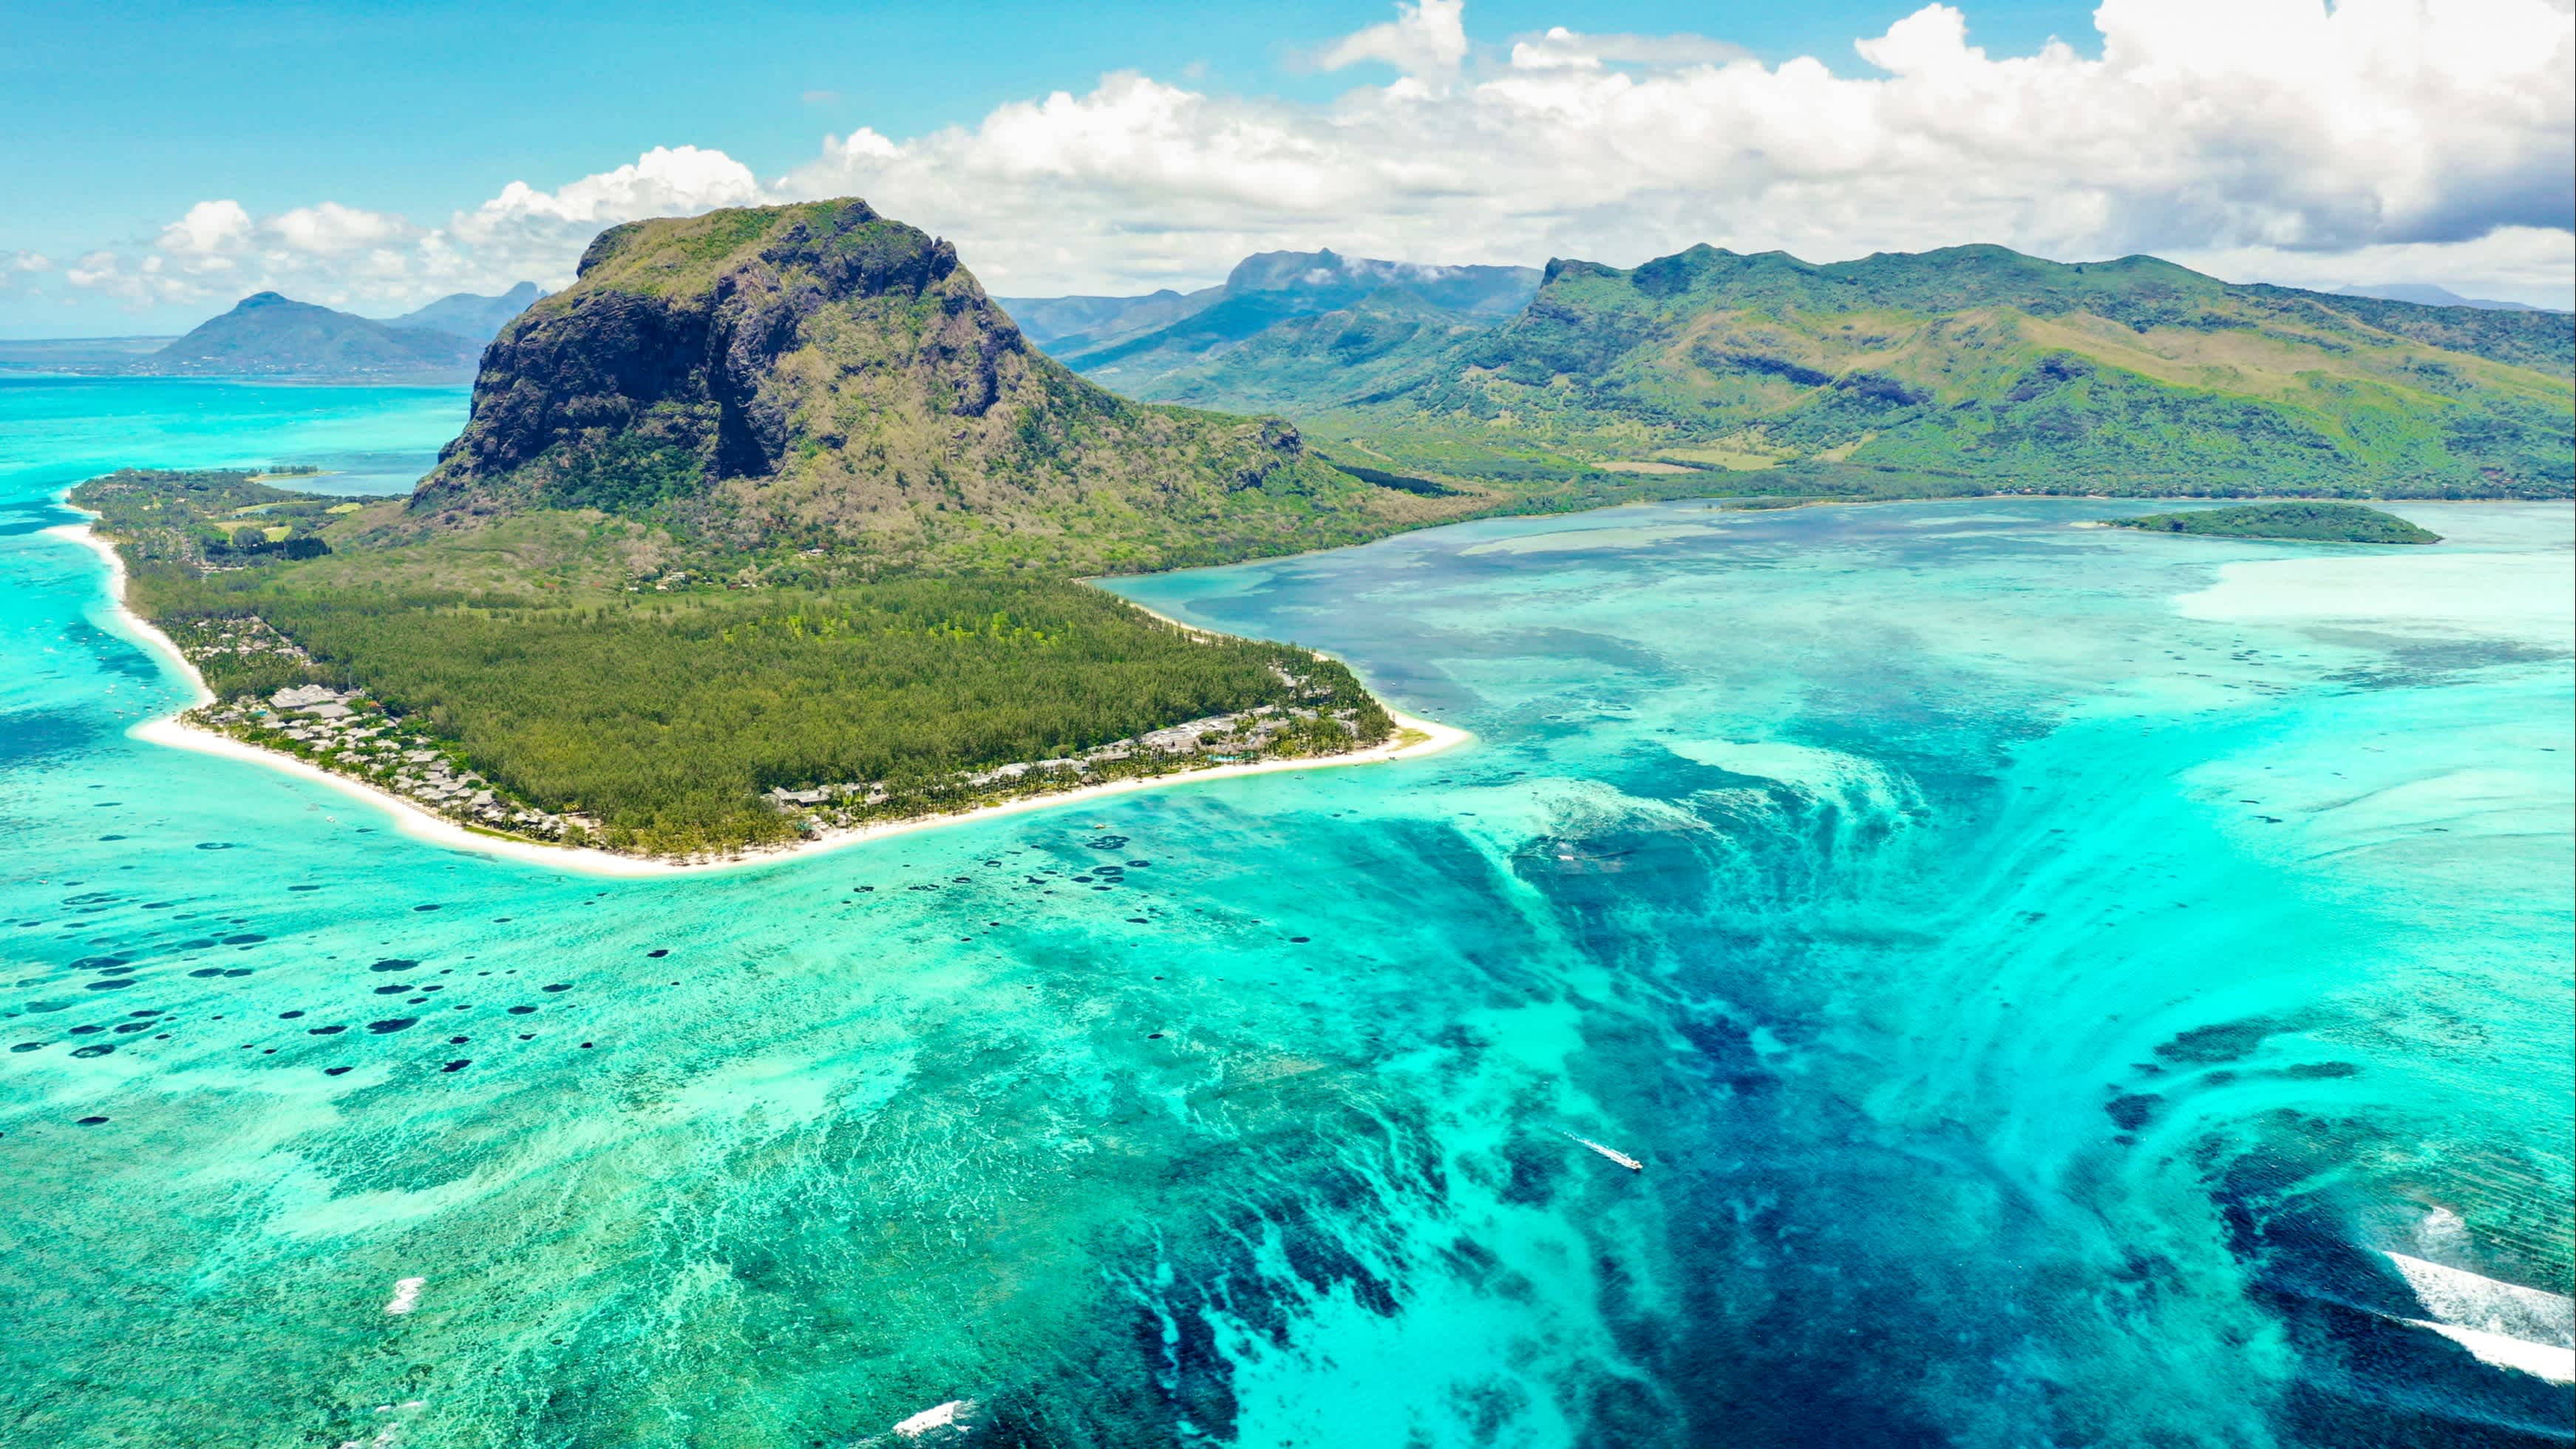 Luftbild des Berges Le Morne auf Mauritius Insel.
